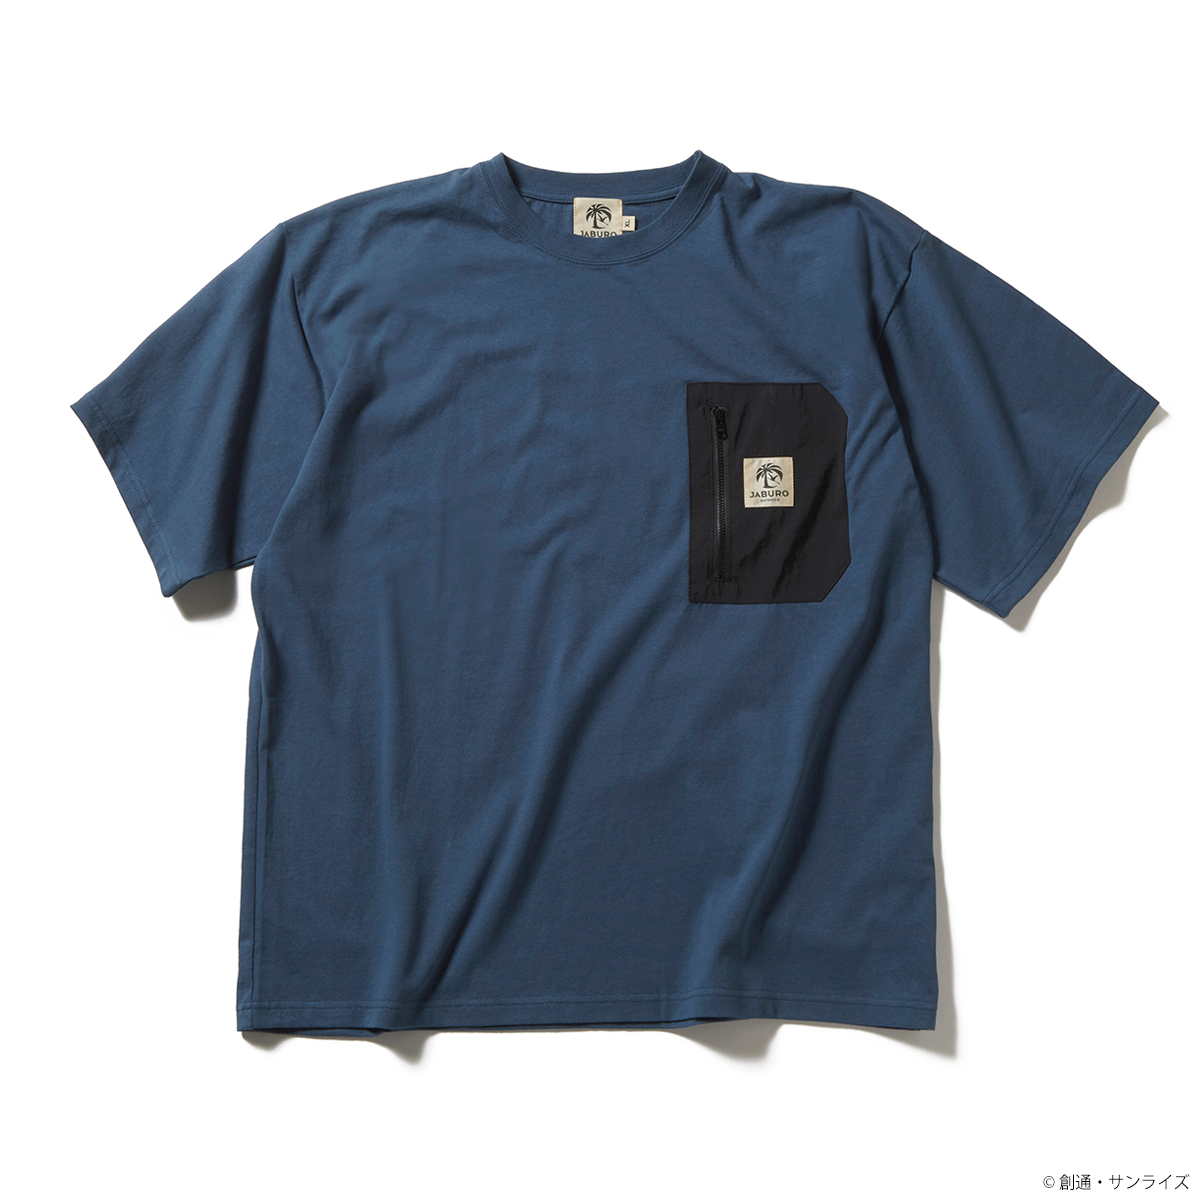 STRICT-G JABURO『機動戦士ガンダム』ポケットTシャツ